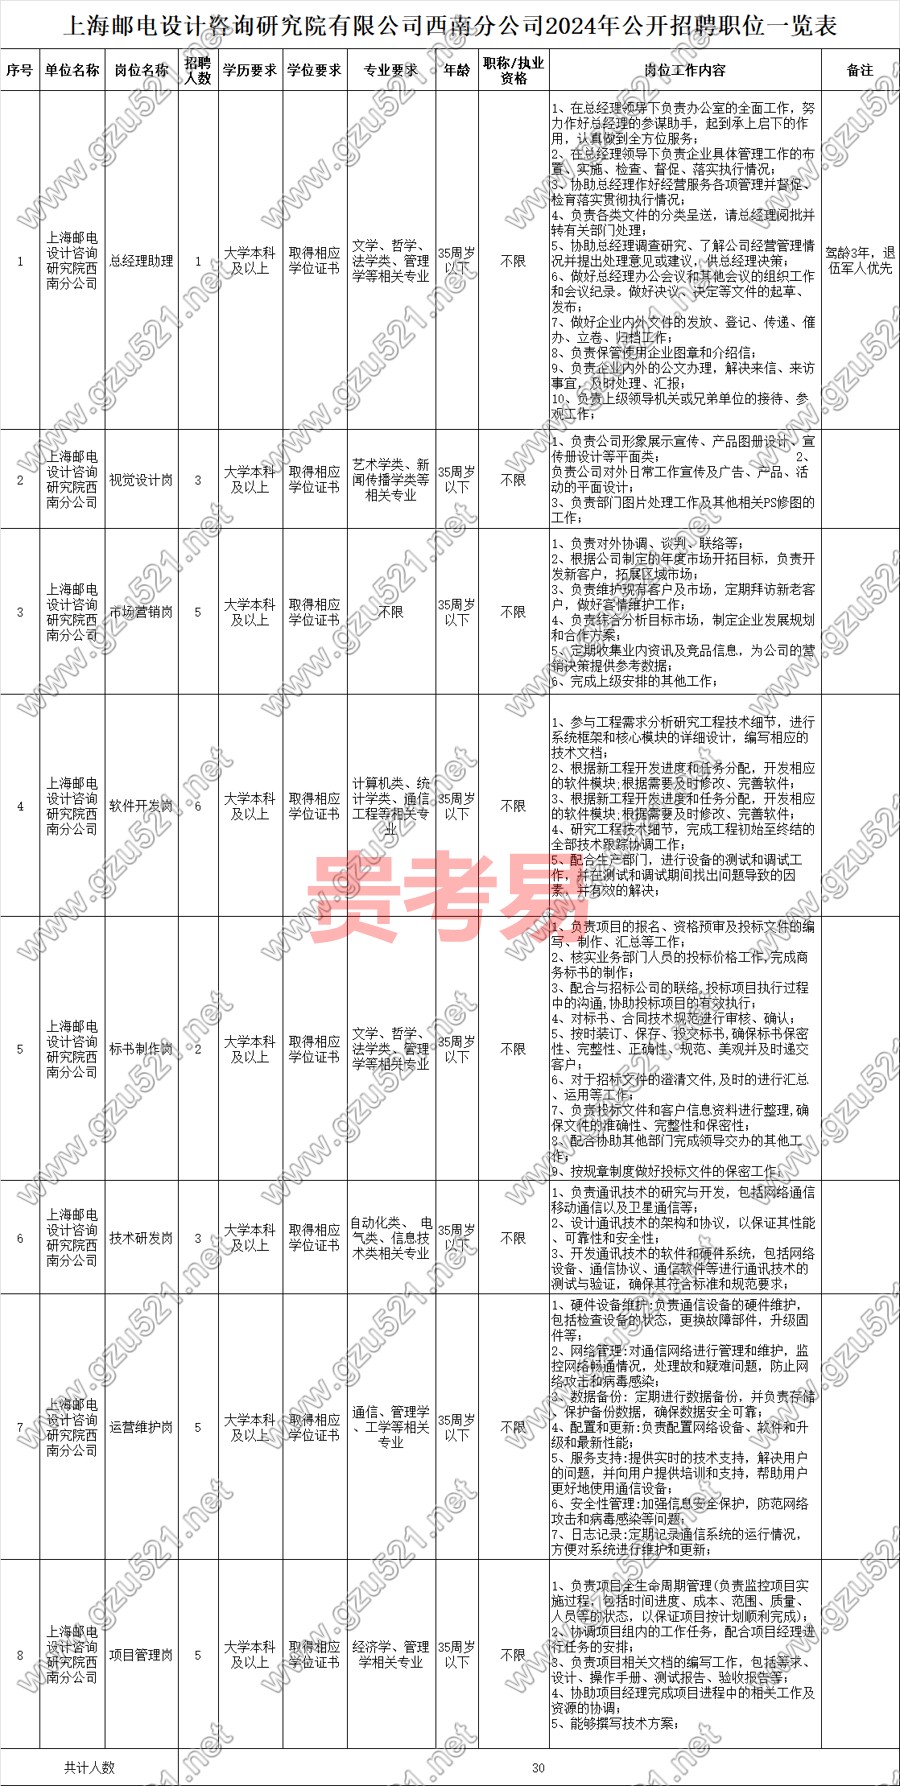 上海郵電設計咨詢研究院有限公司西南分公司2024年公開招聘公告